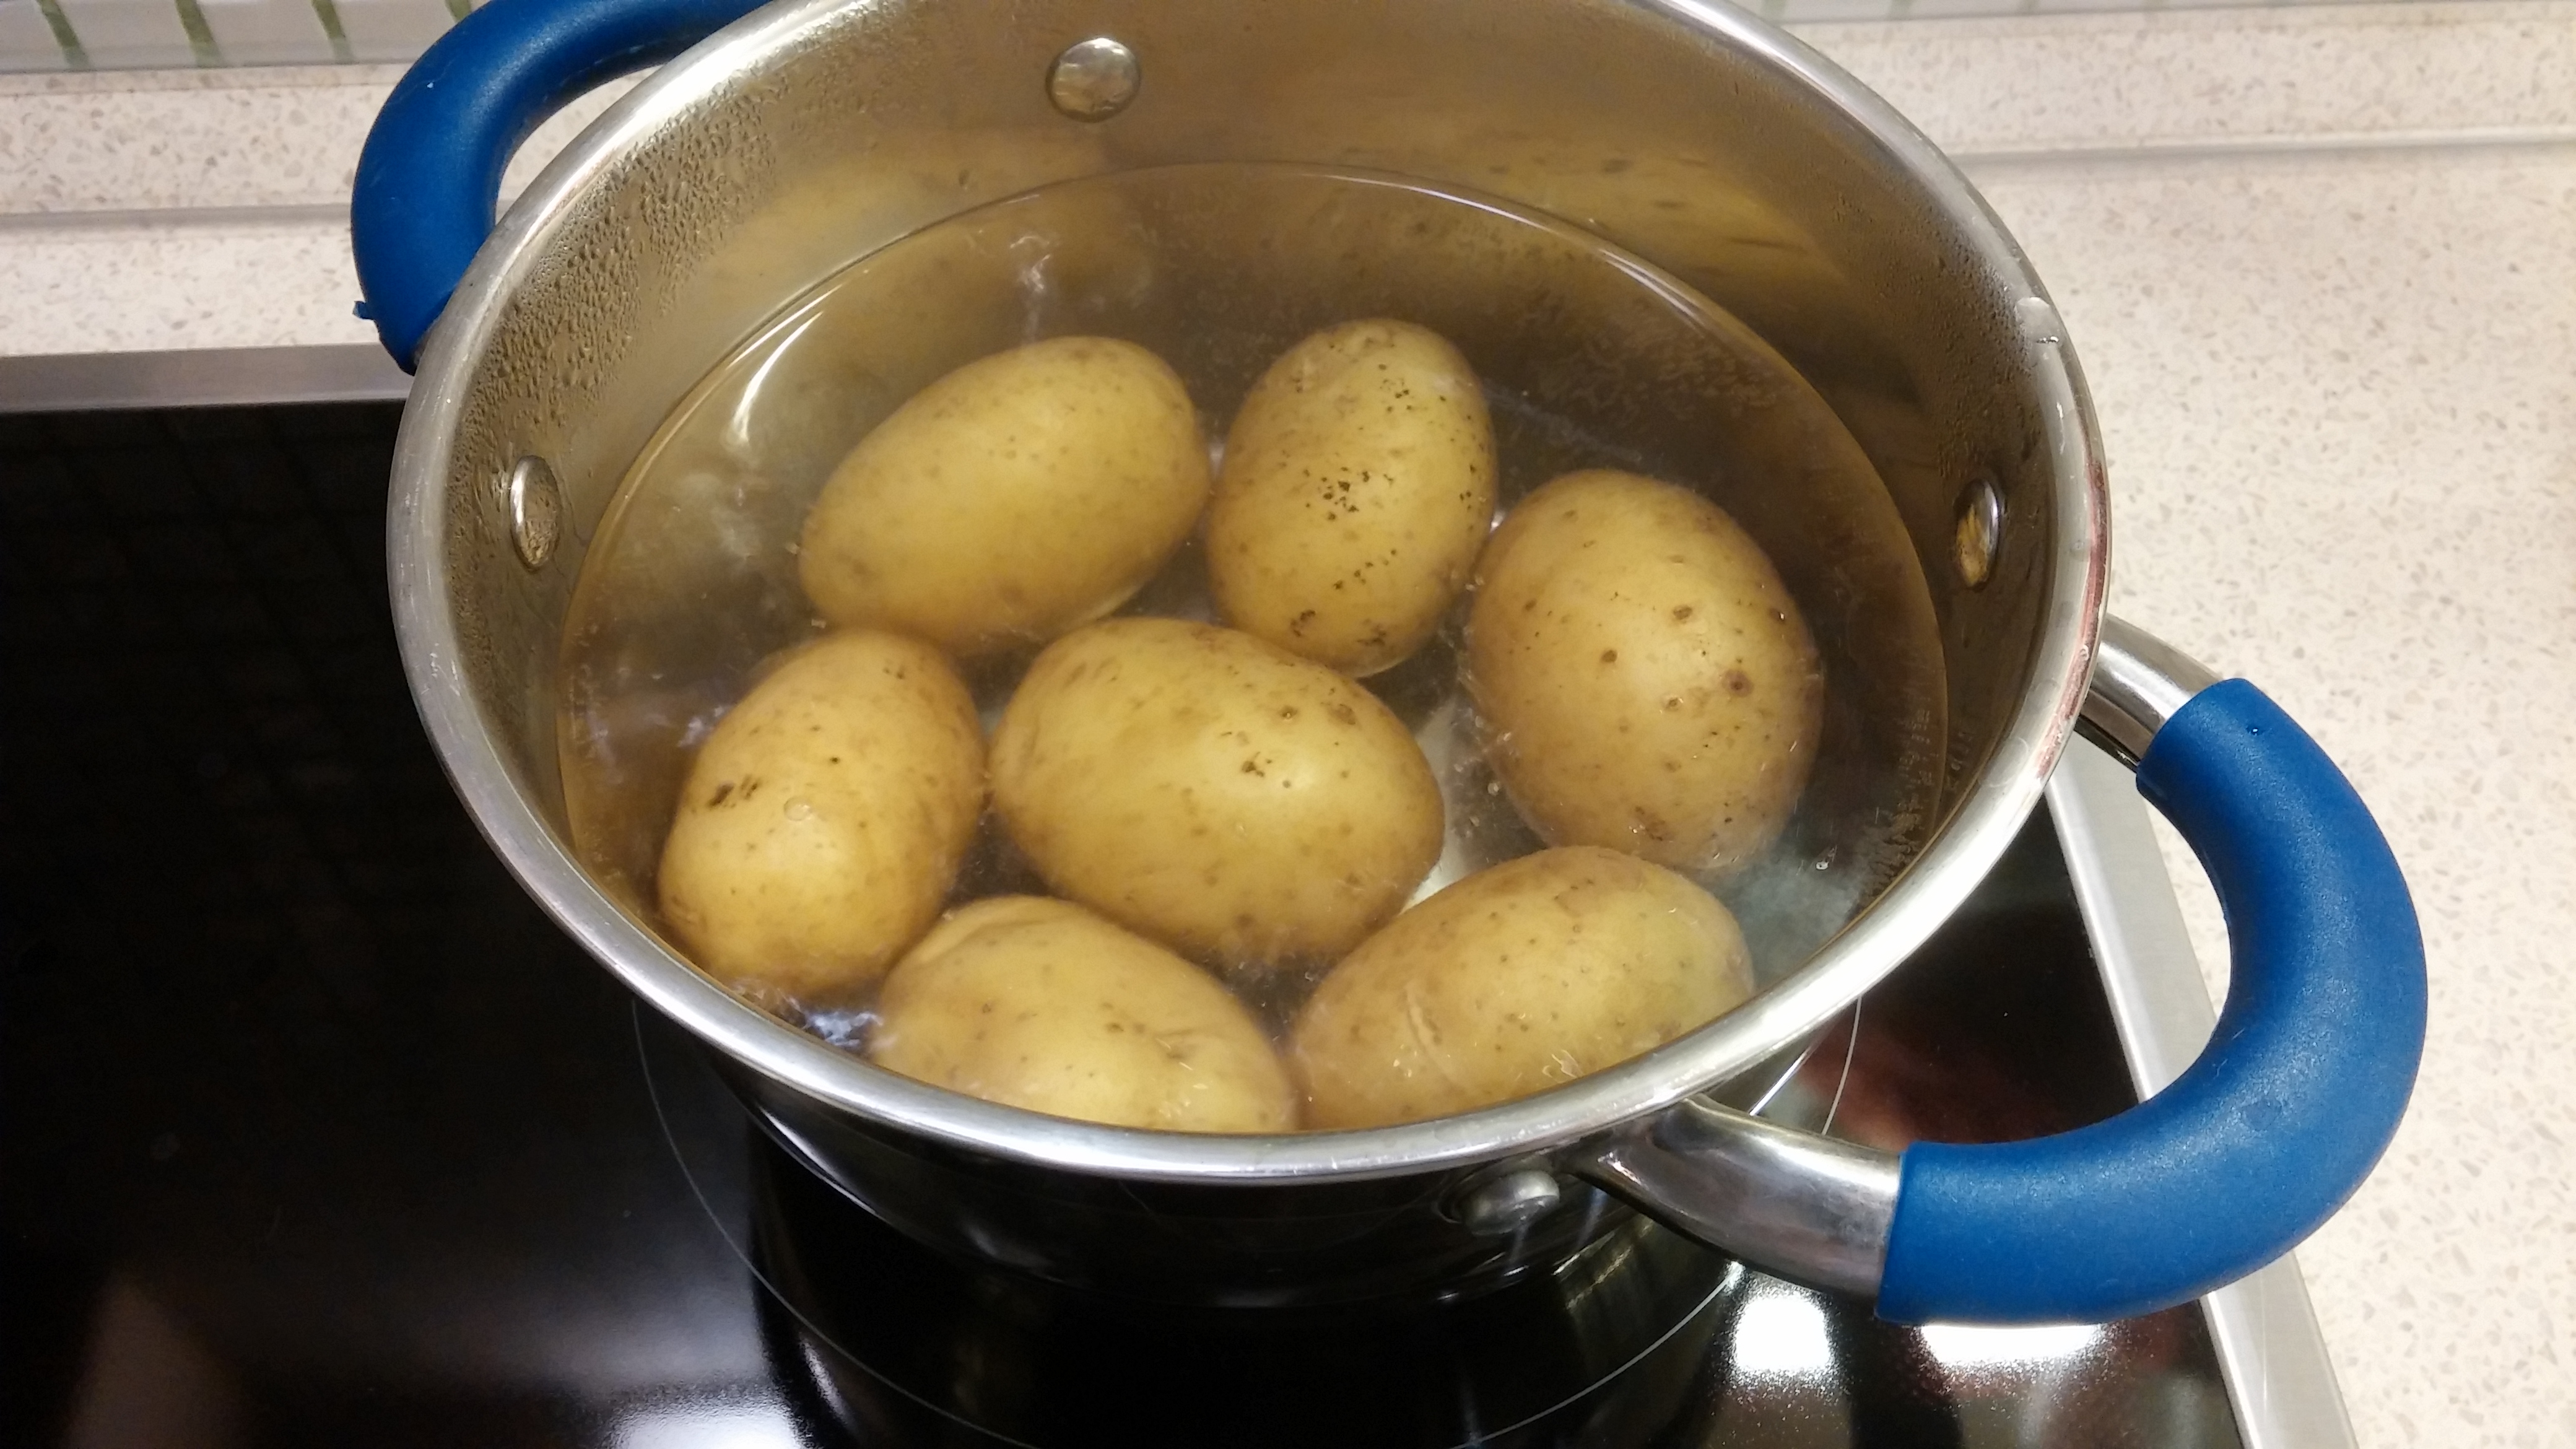 Картошка с водой в кастрюле. Картошка в кастрюле. Вареная картошка в кастрюле. Отваривание картофеля. Варка картофеля в кастрюле в мундире.